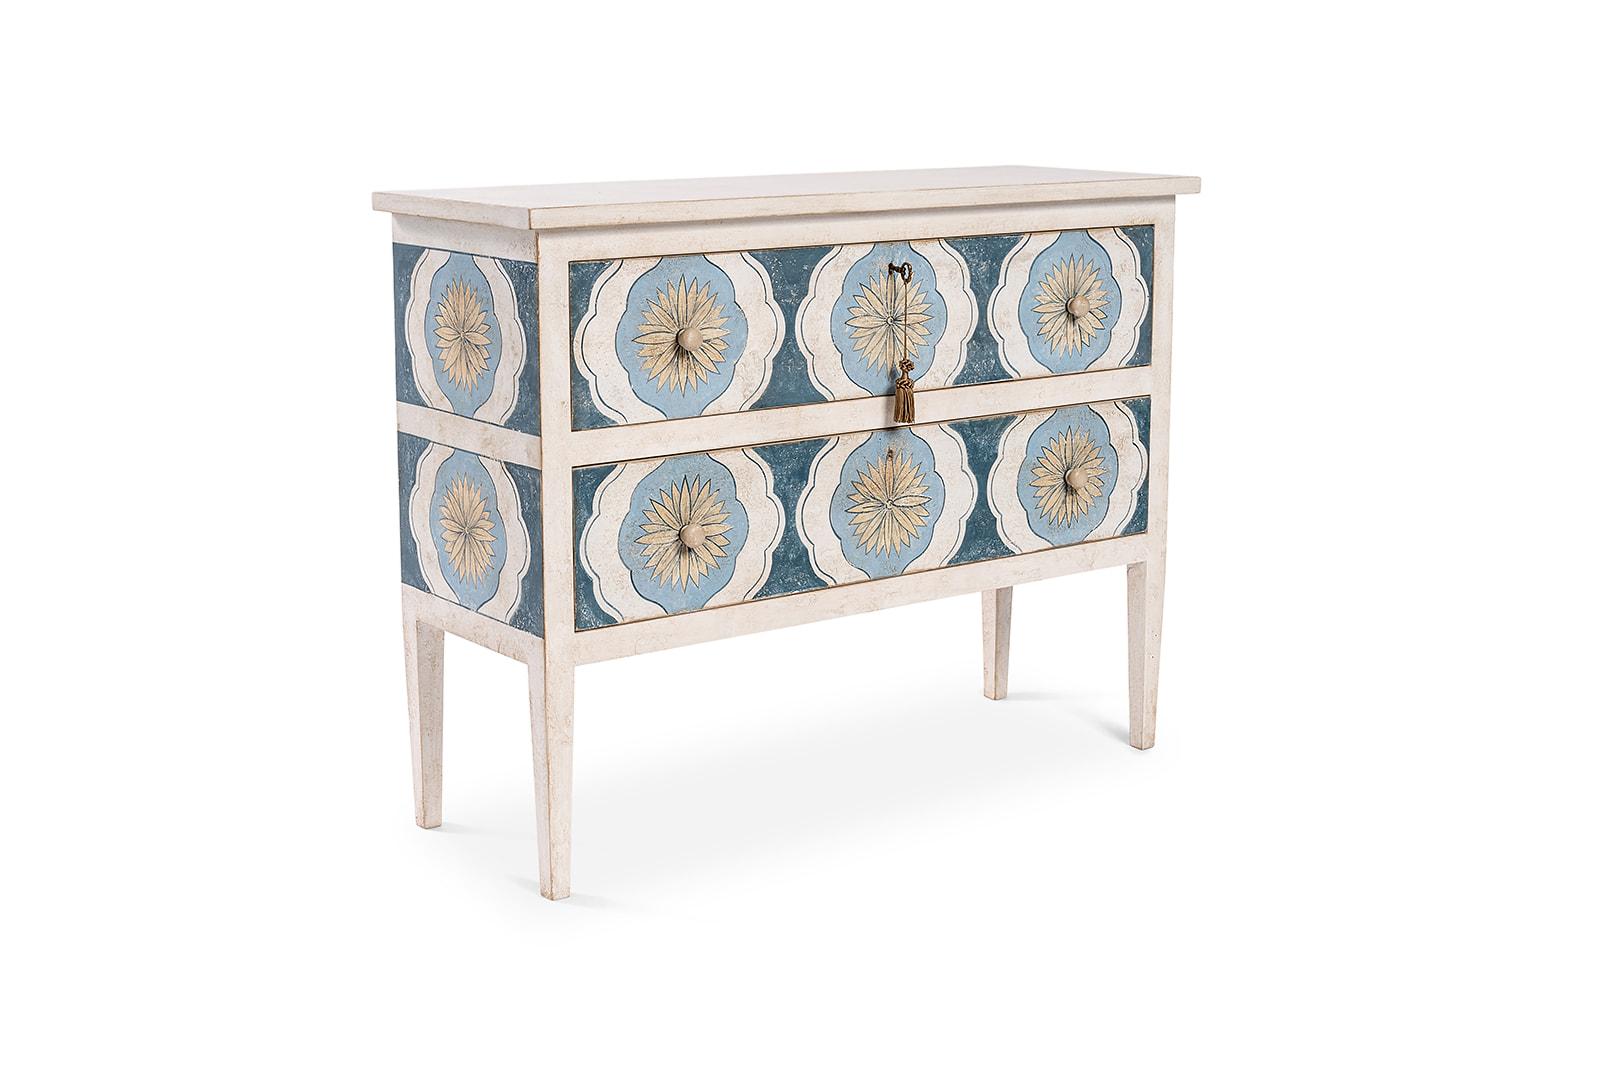 Dans notre Collection de meubles peints à la main, nous avons le plaisir de vous présenter notre commode Barberini à tiroirs bleu profond.
Sur un fond de couleur Deep Sea Blue avec notre décor de tournesols dans des tons blancs et ocres captivants,